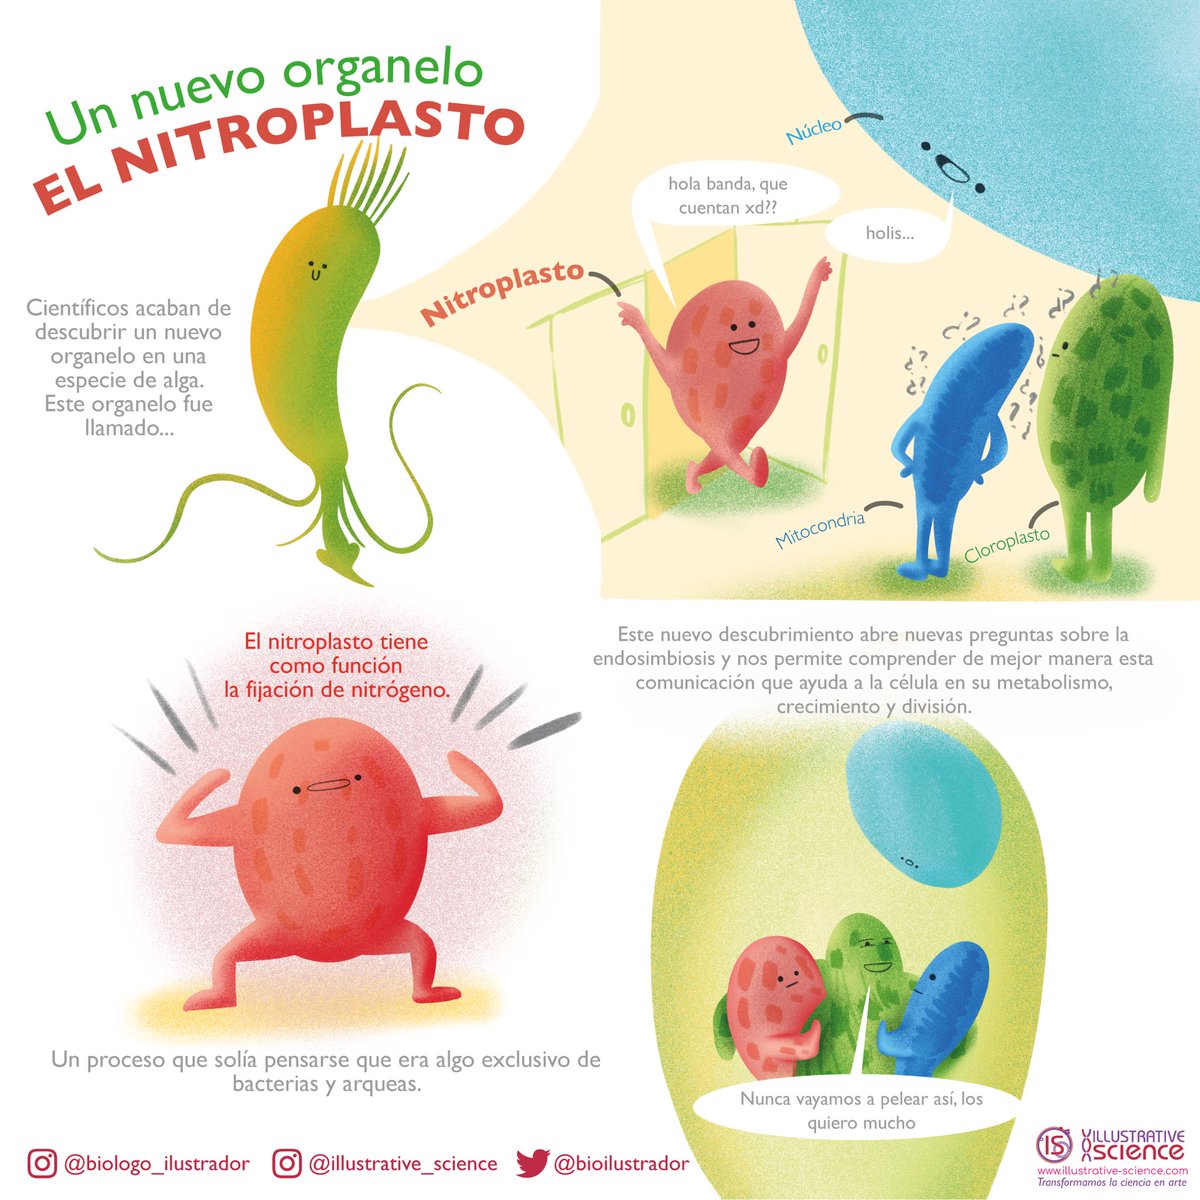 El nitroplasto 🫶🏽 un nuevo organelo

Infografía libre de uso :)